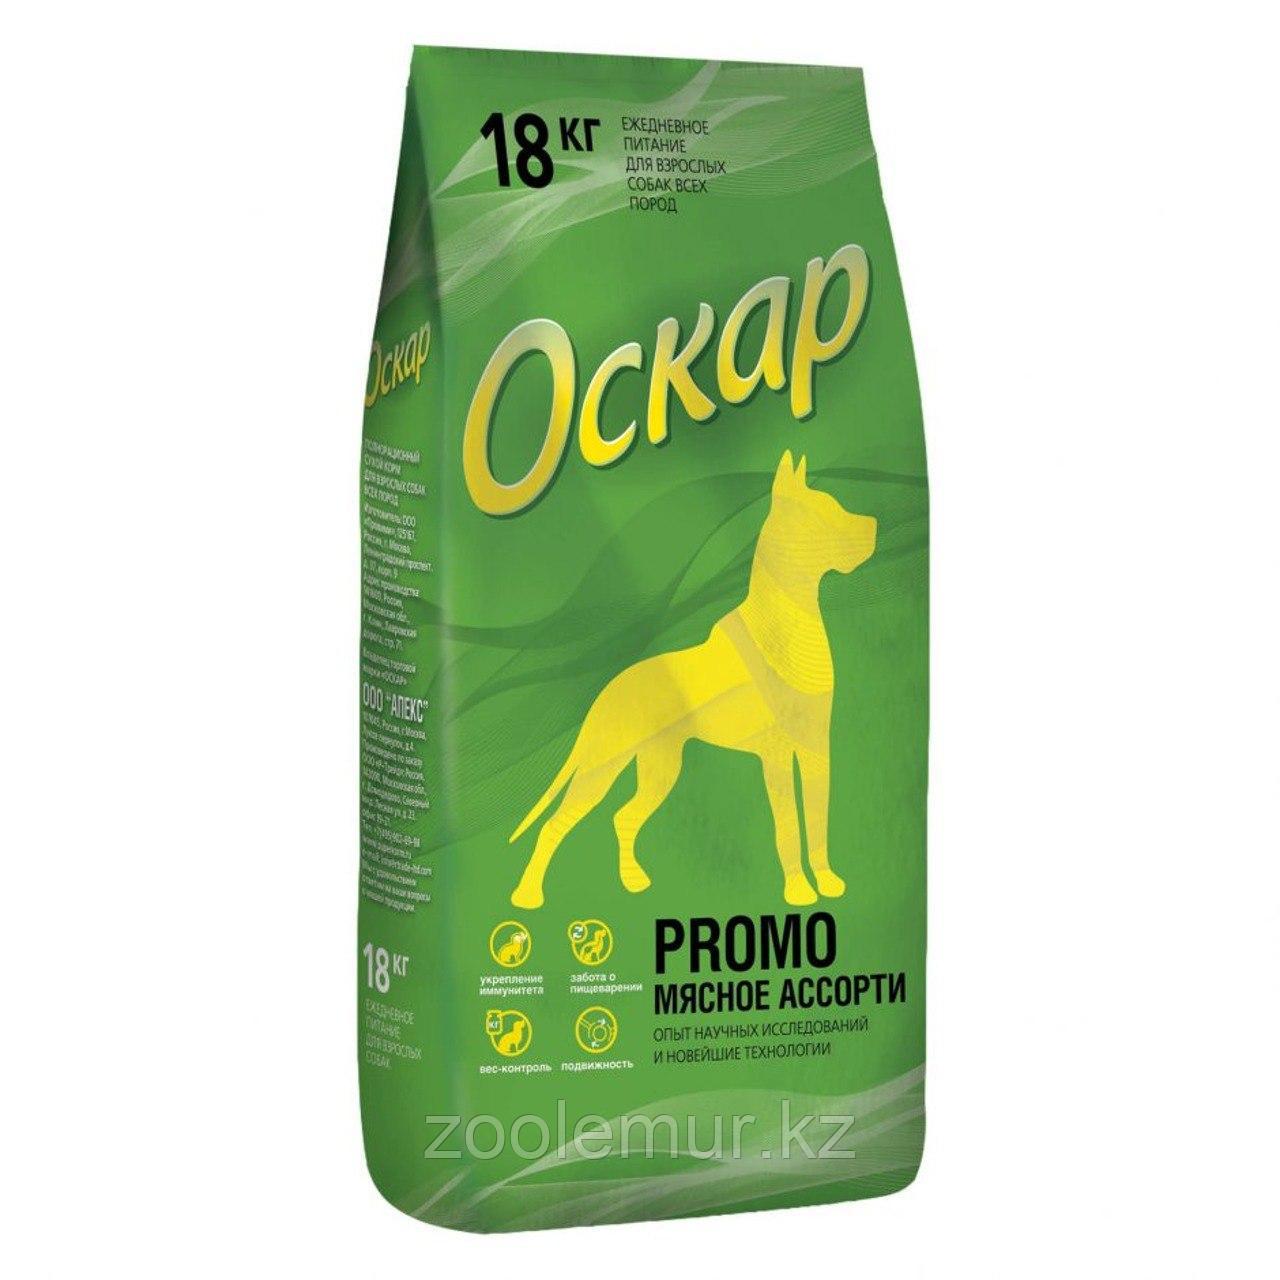 Сбалансированный Сухой корм «Оскар» Мясное ассорти18 кг для взрослых собак всех пород